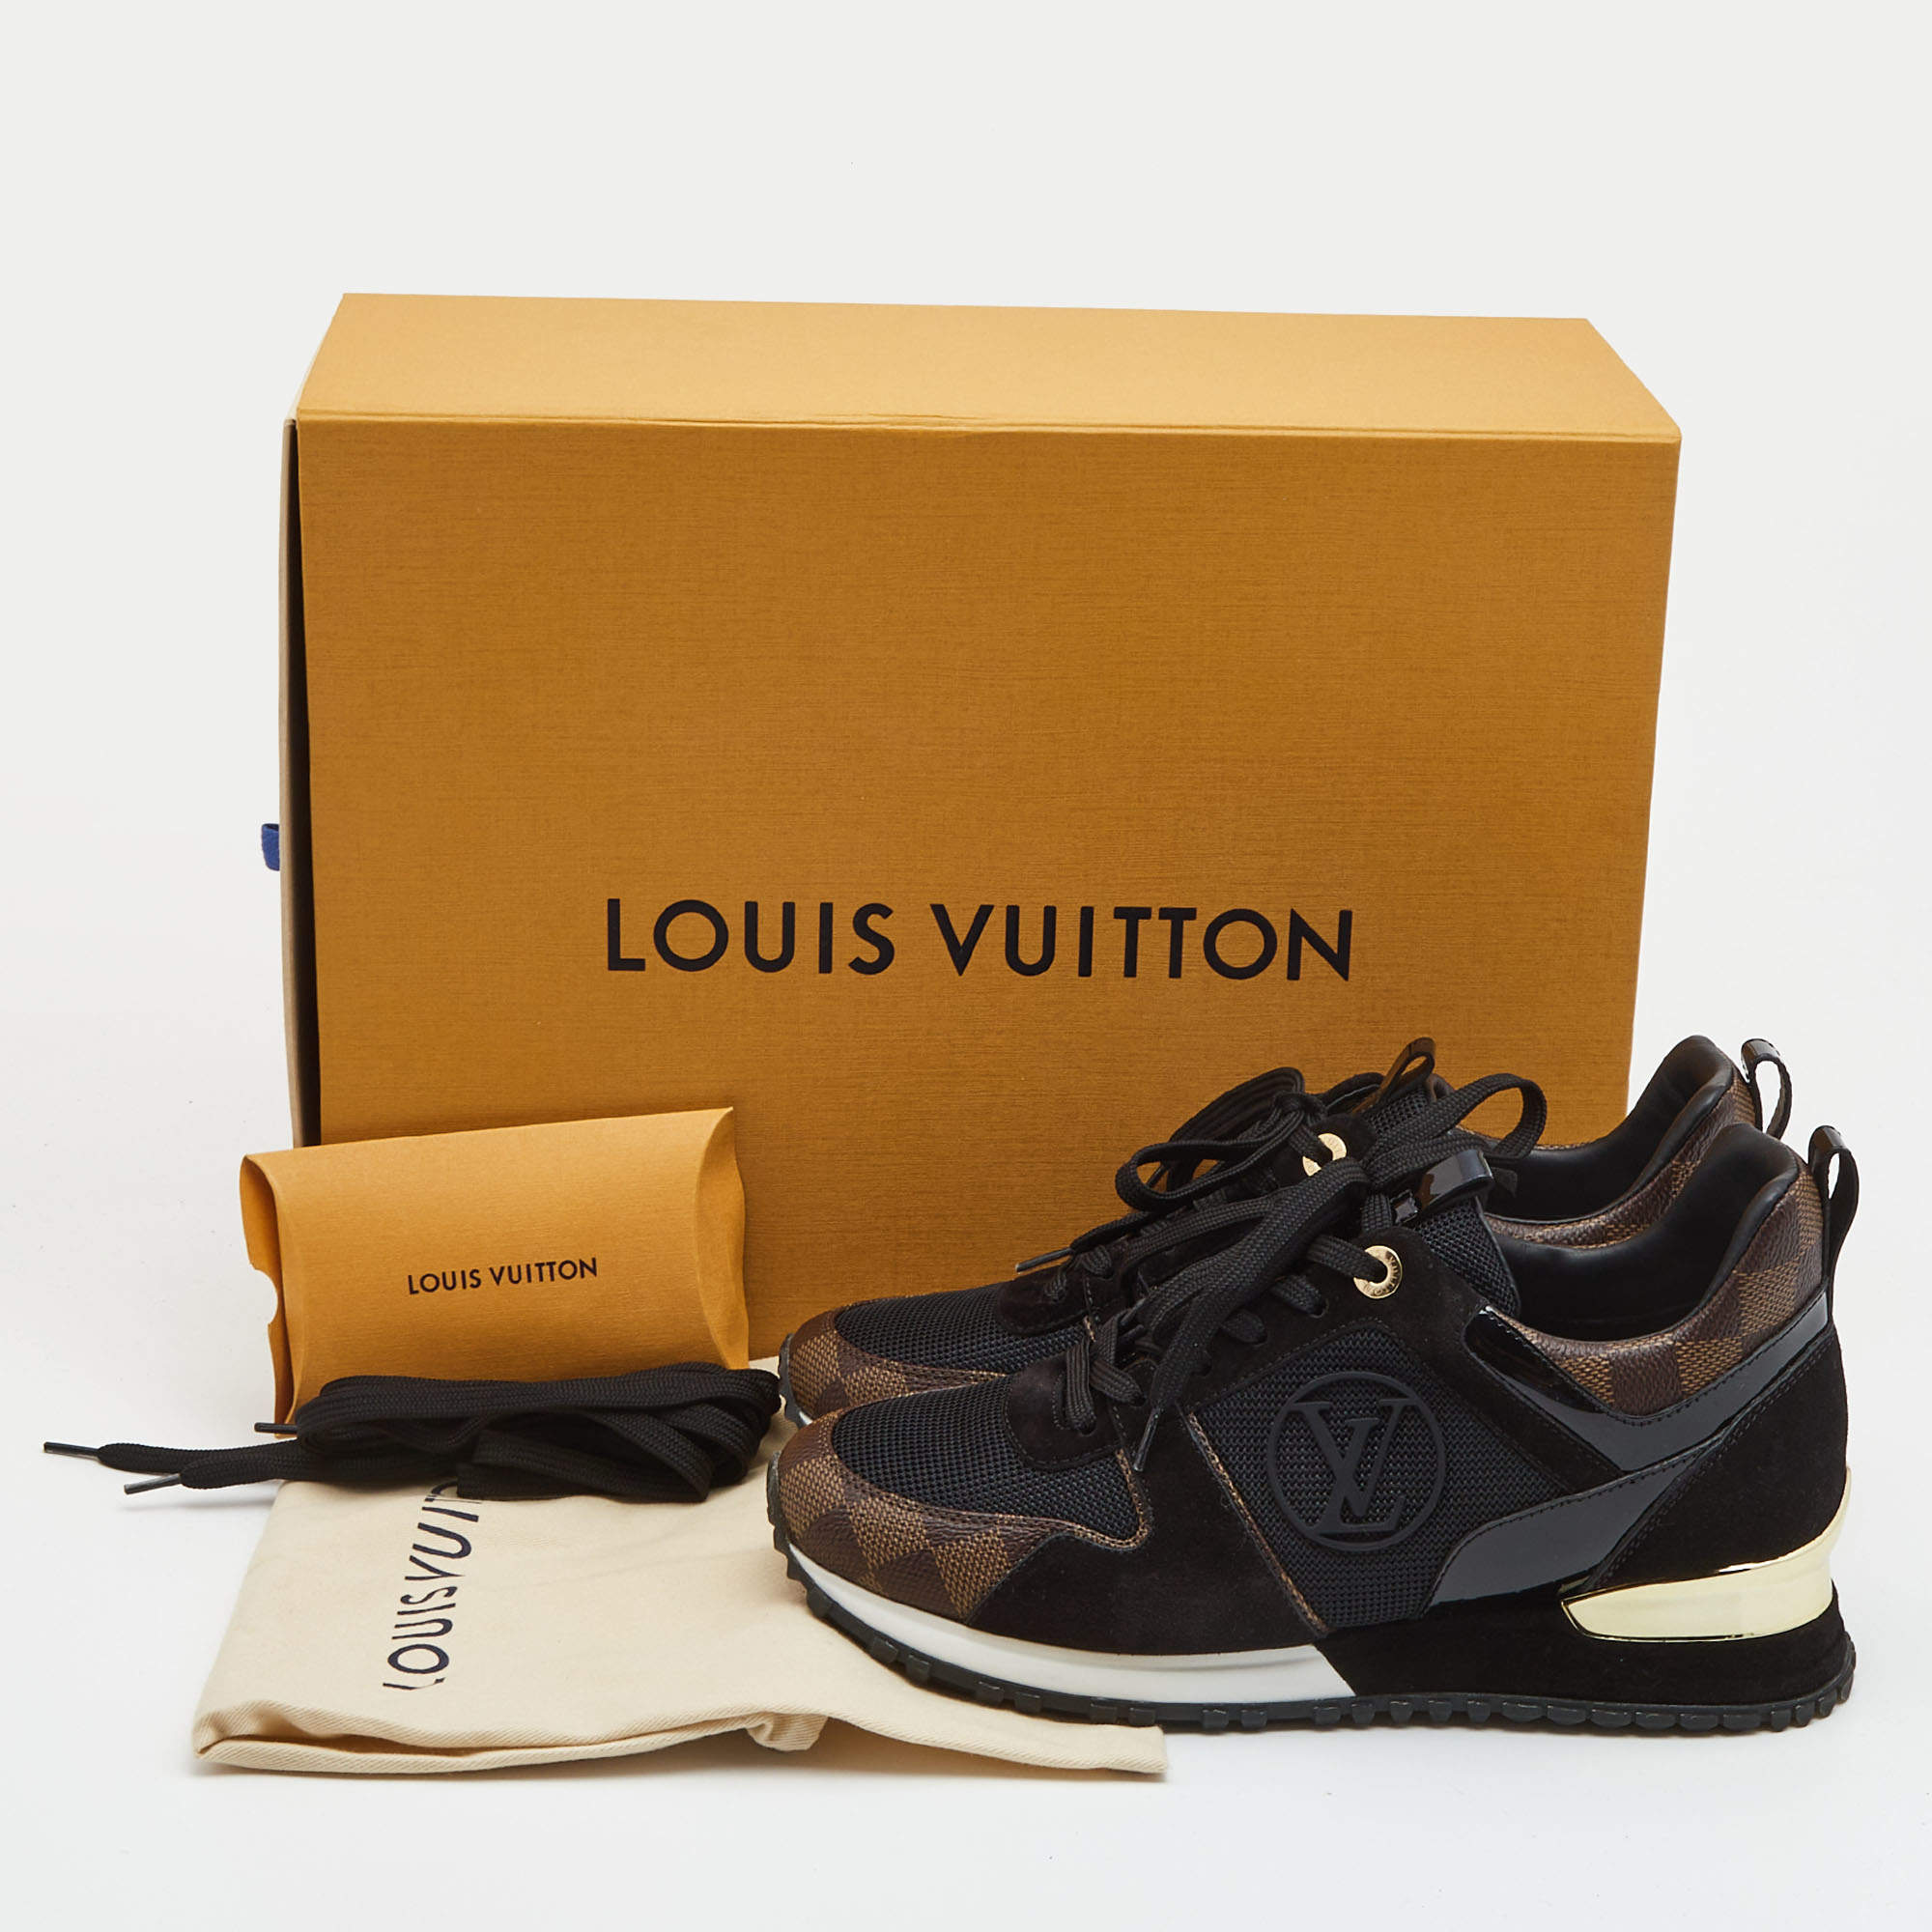 Run away trainers Louis Vuitton Brown size 38.5 EU in Suede - 29795617